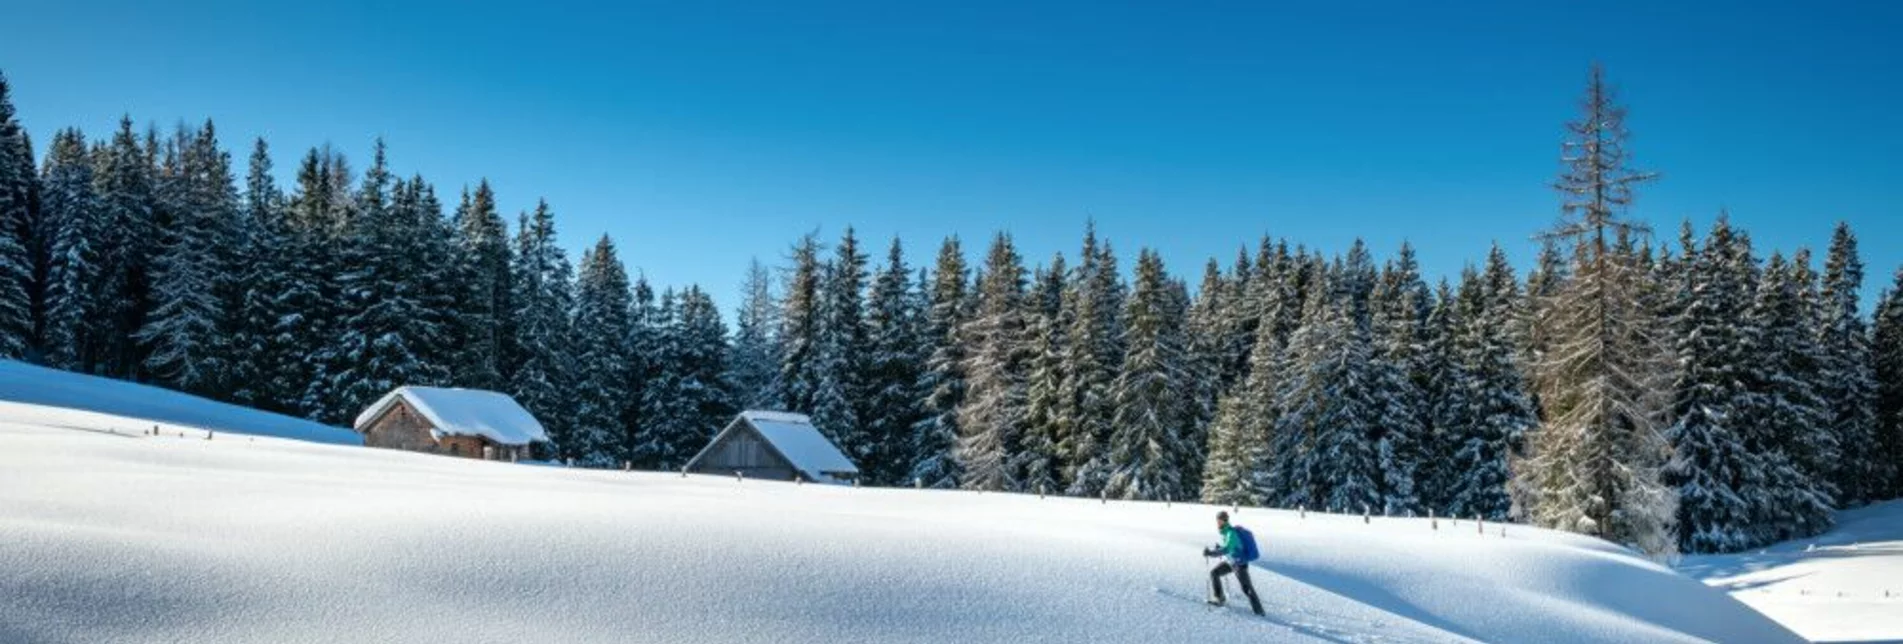 Skitour Skitour Viehbergalm - Touren-Impression #1 | © Erlebnisregion Schladming-Dachstein